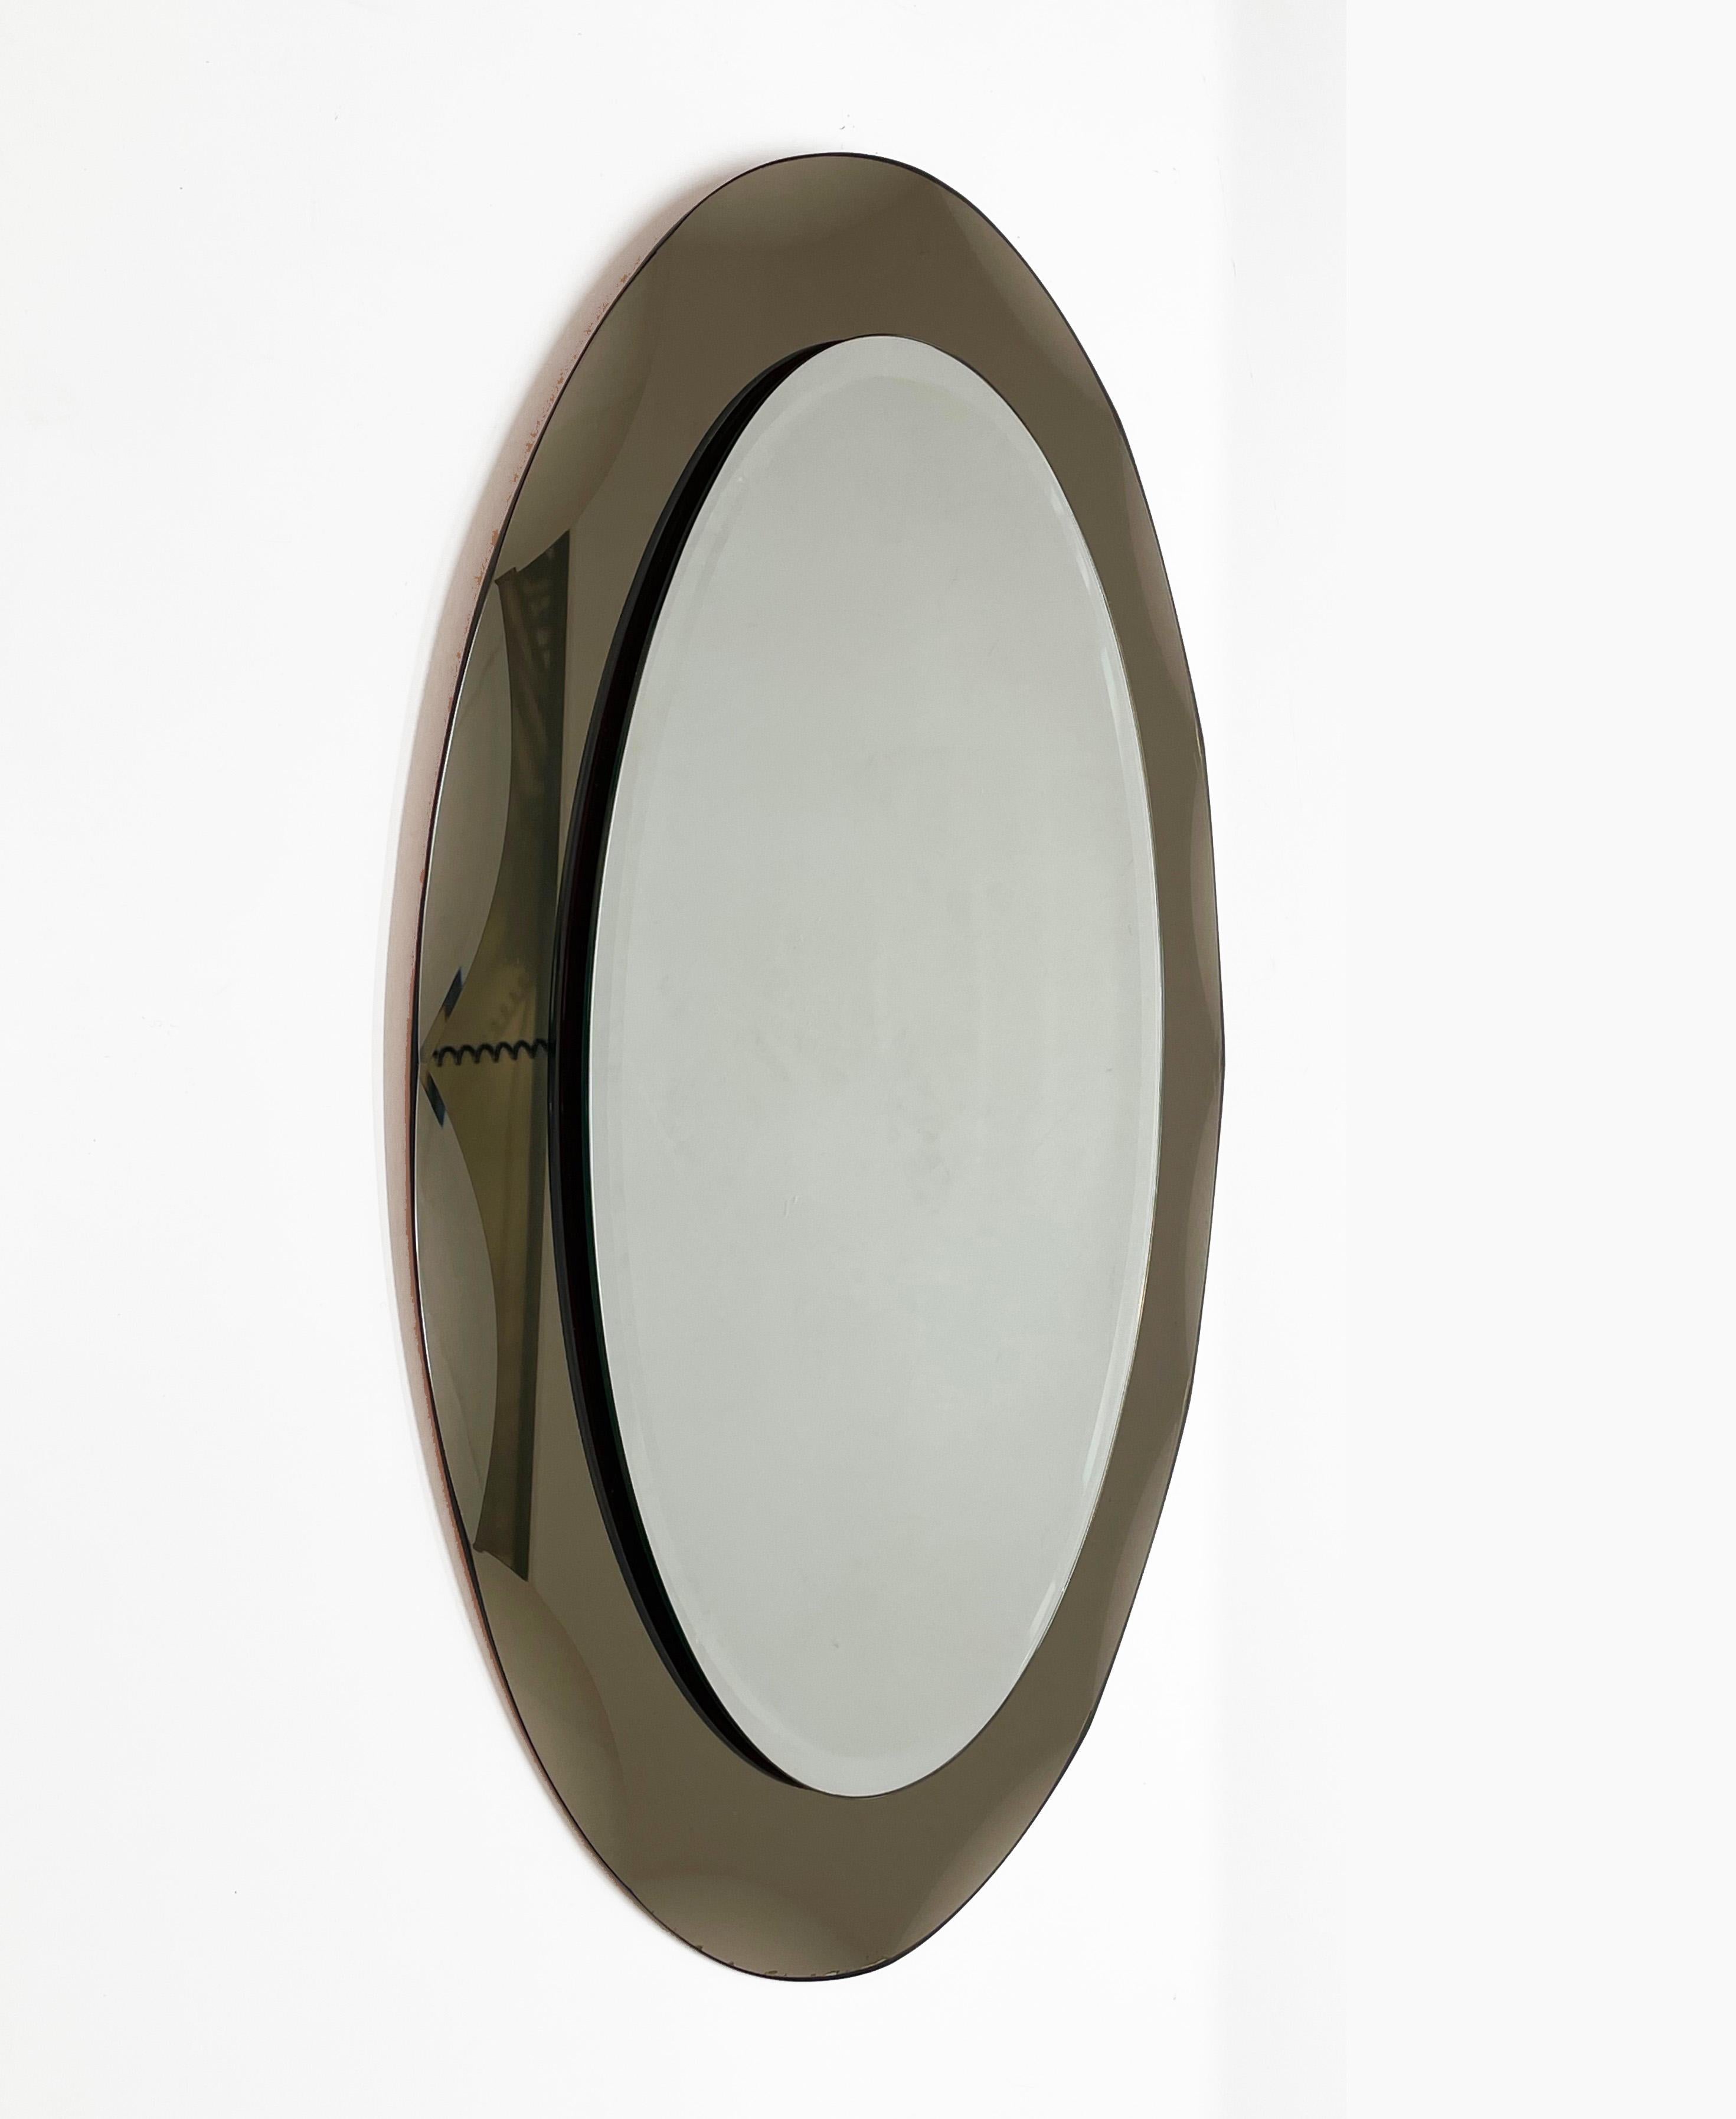 Magnifique miroir ovale du milieu du siècle dernier avec un cadre gravé en bronze. Ce miroir est dans le style de Cristal Arte et a été conçu en Italie dans les années 1960.

Cette pièce est un exemple d'excellente fabrication italienne avec une